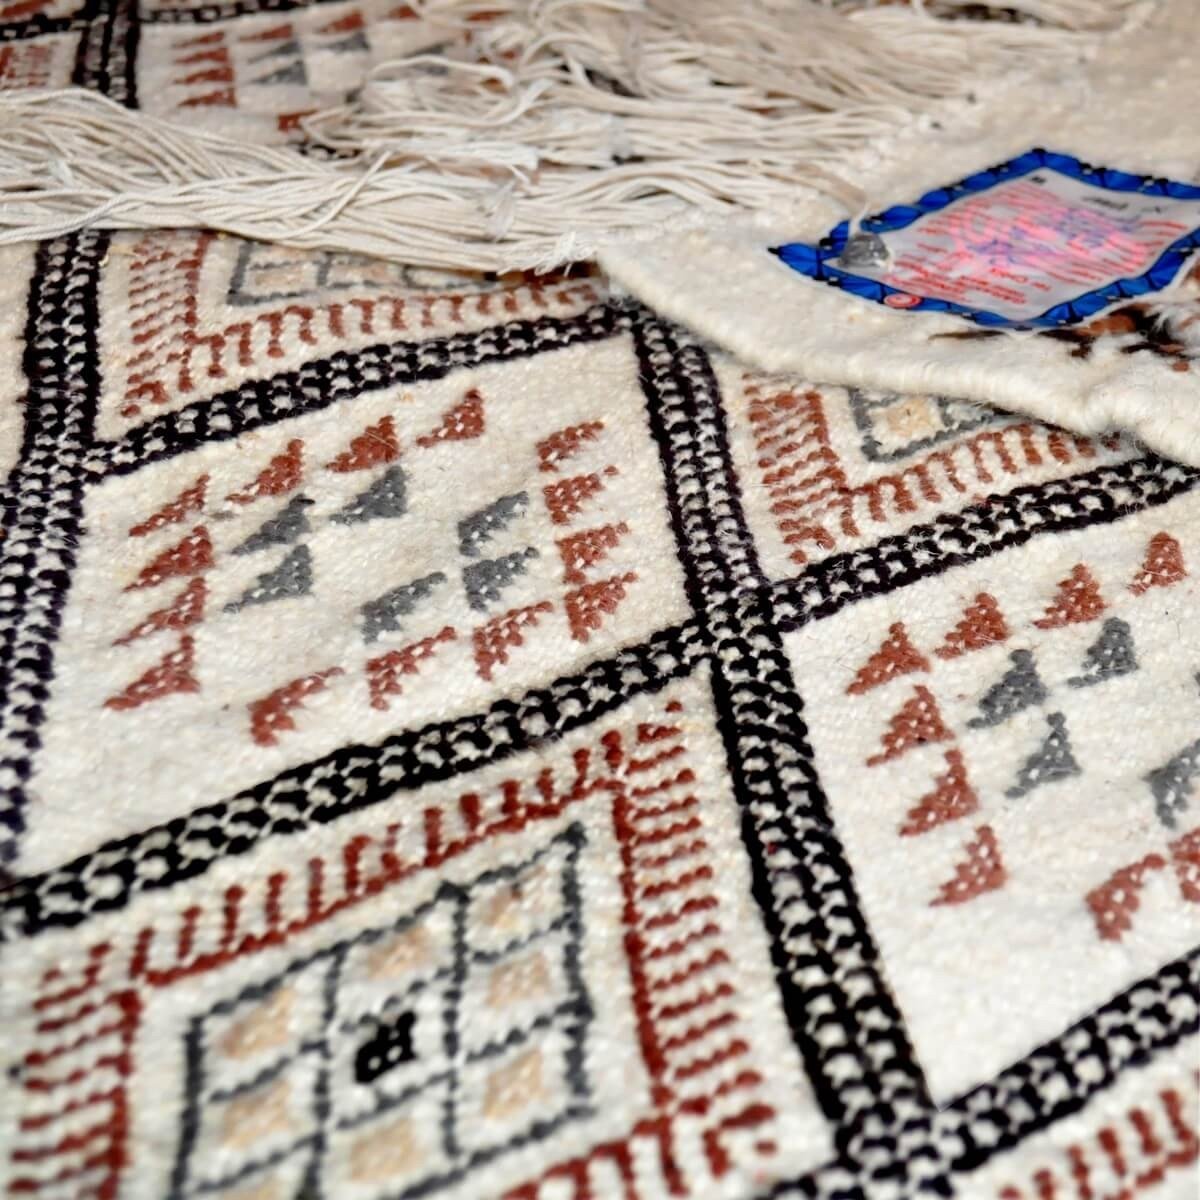 Berber tapijt Tapijt Margoum Mansoura 110x200 Beige/Bruin (Handgeweven, Wol, Tunesië) Tunesisch Margoum Tapijt uit de stad Kairo